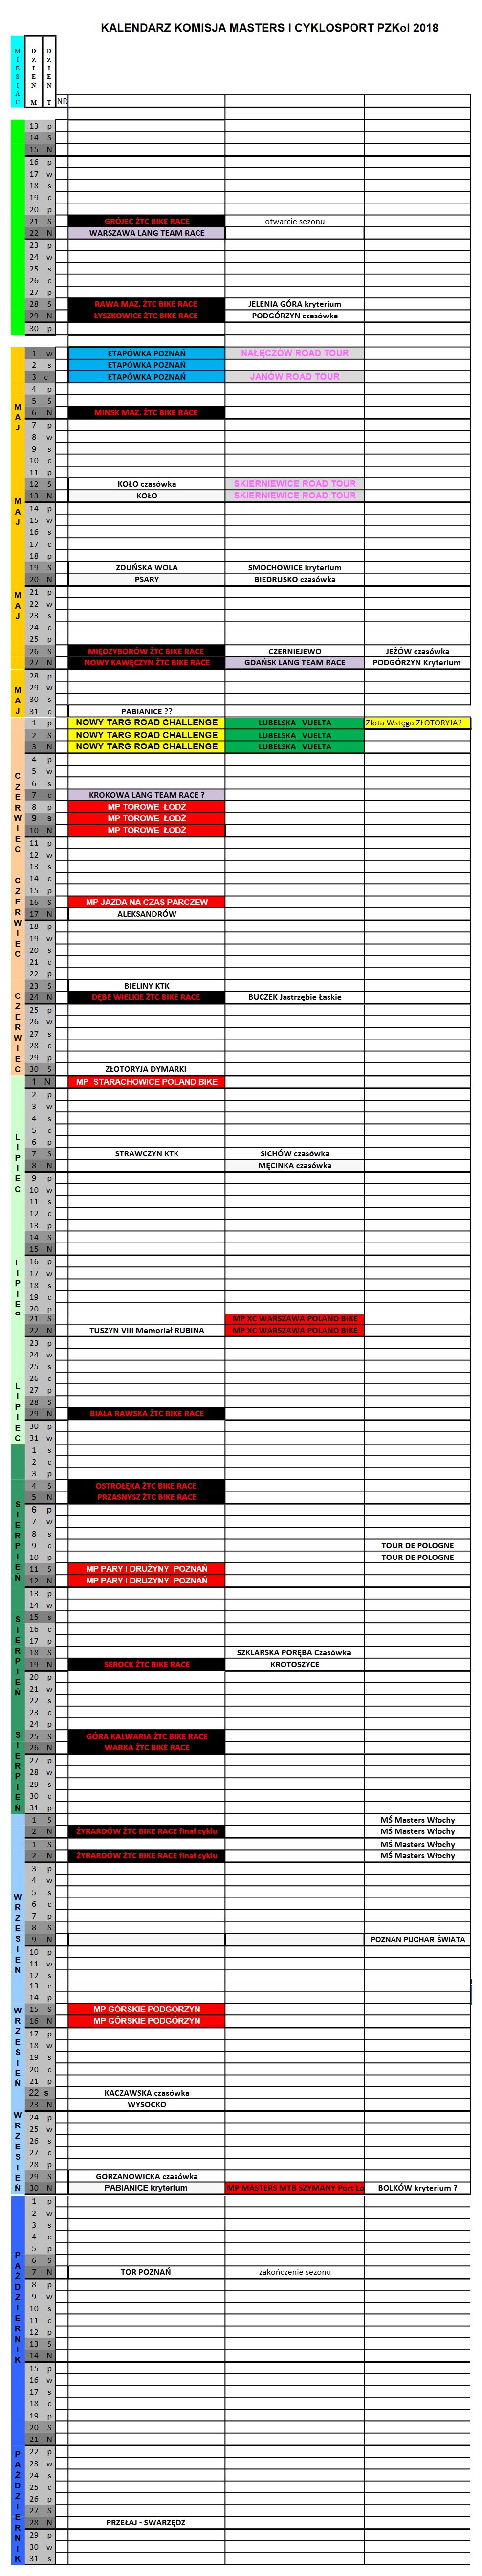 Kalendarz wyścigów masters 2018